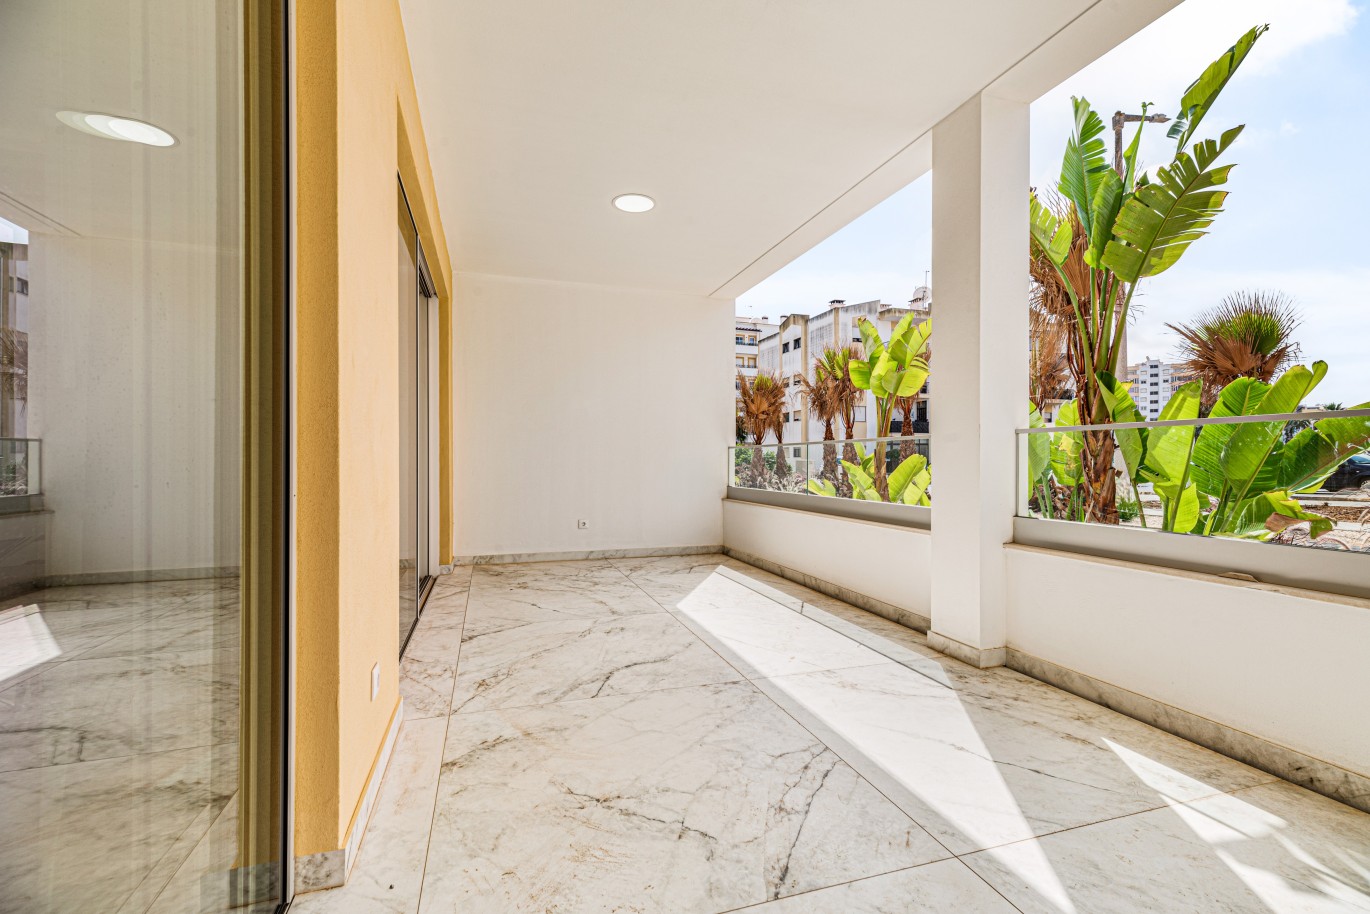 Apartamento, com terraço, para venda, em Lagos, Algarve_238135